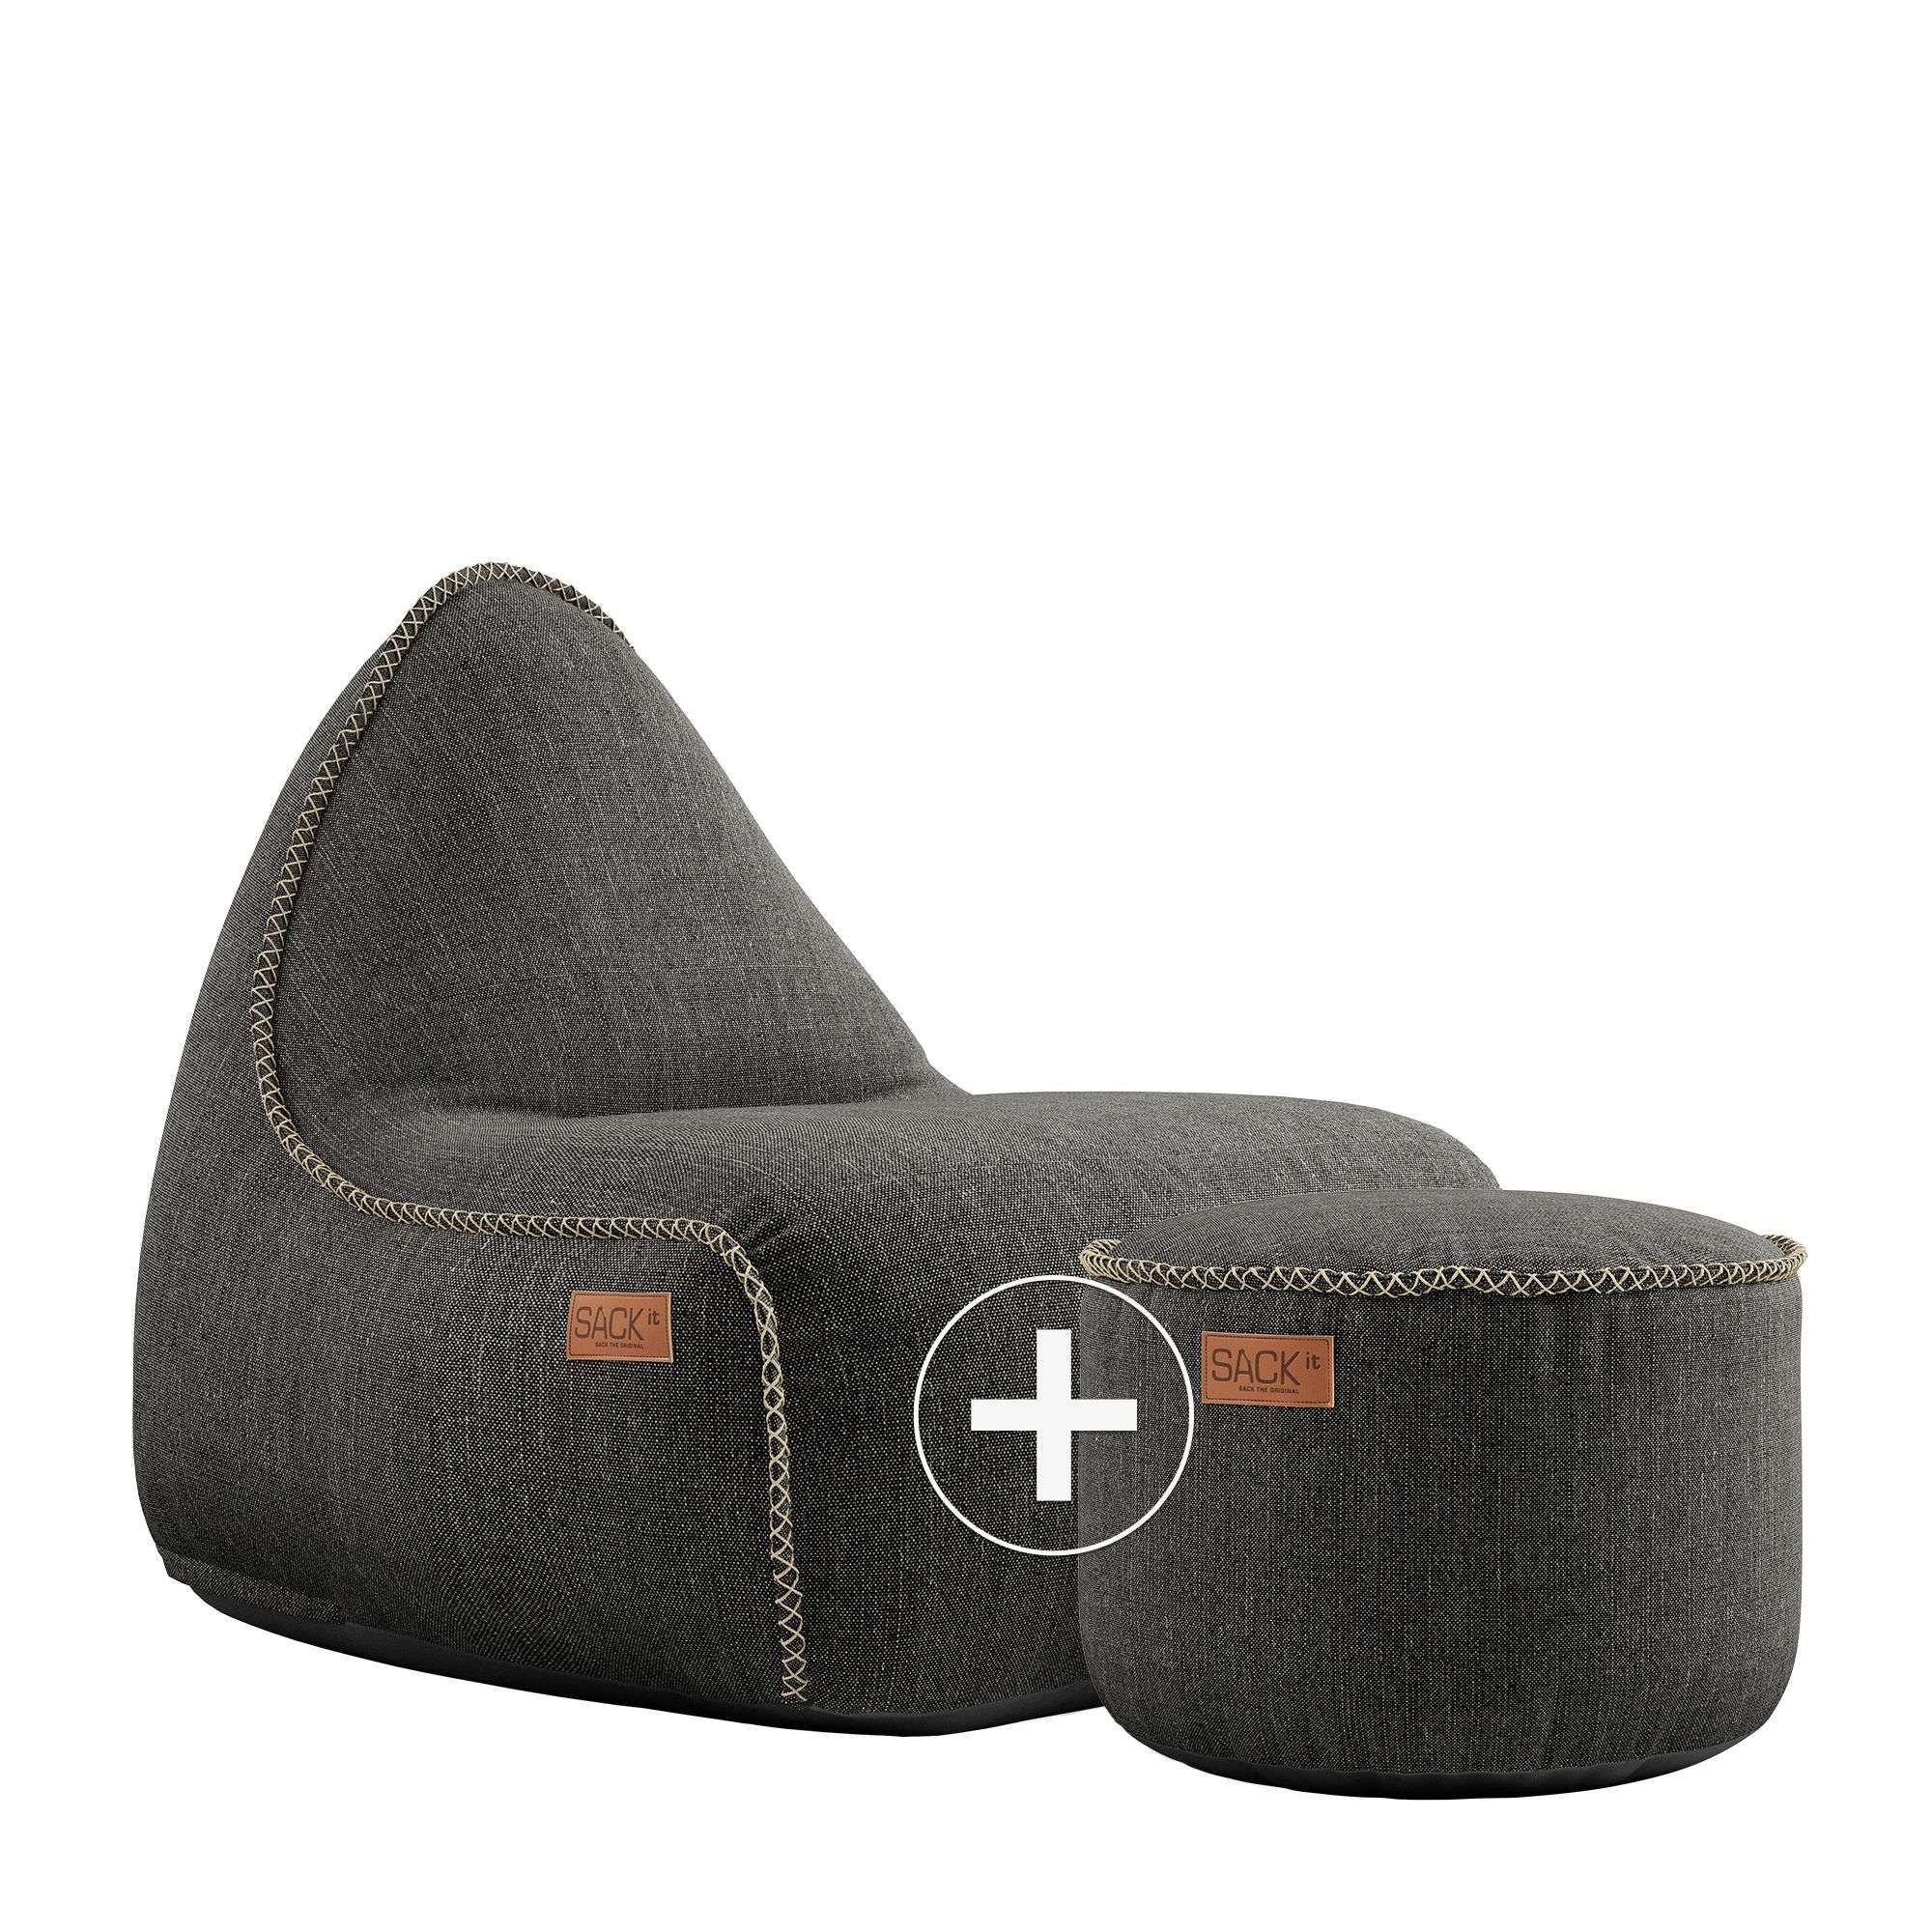 SACKit SACKit Cobana Lounge Chair + Pouf, Farbe: Cobana Grey